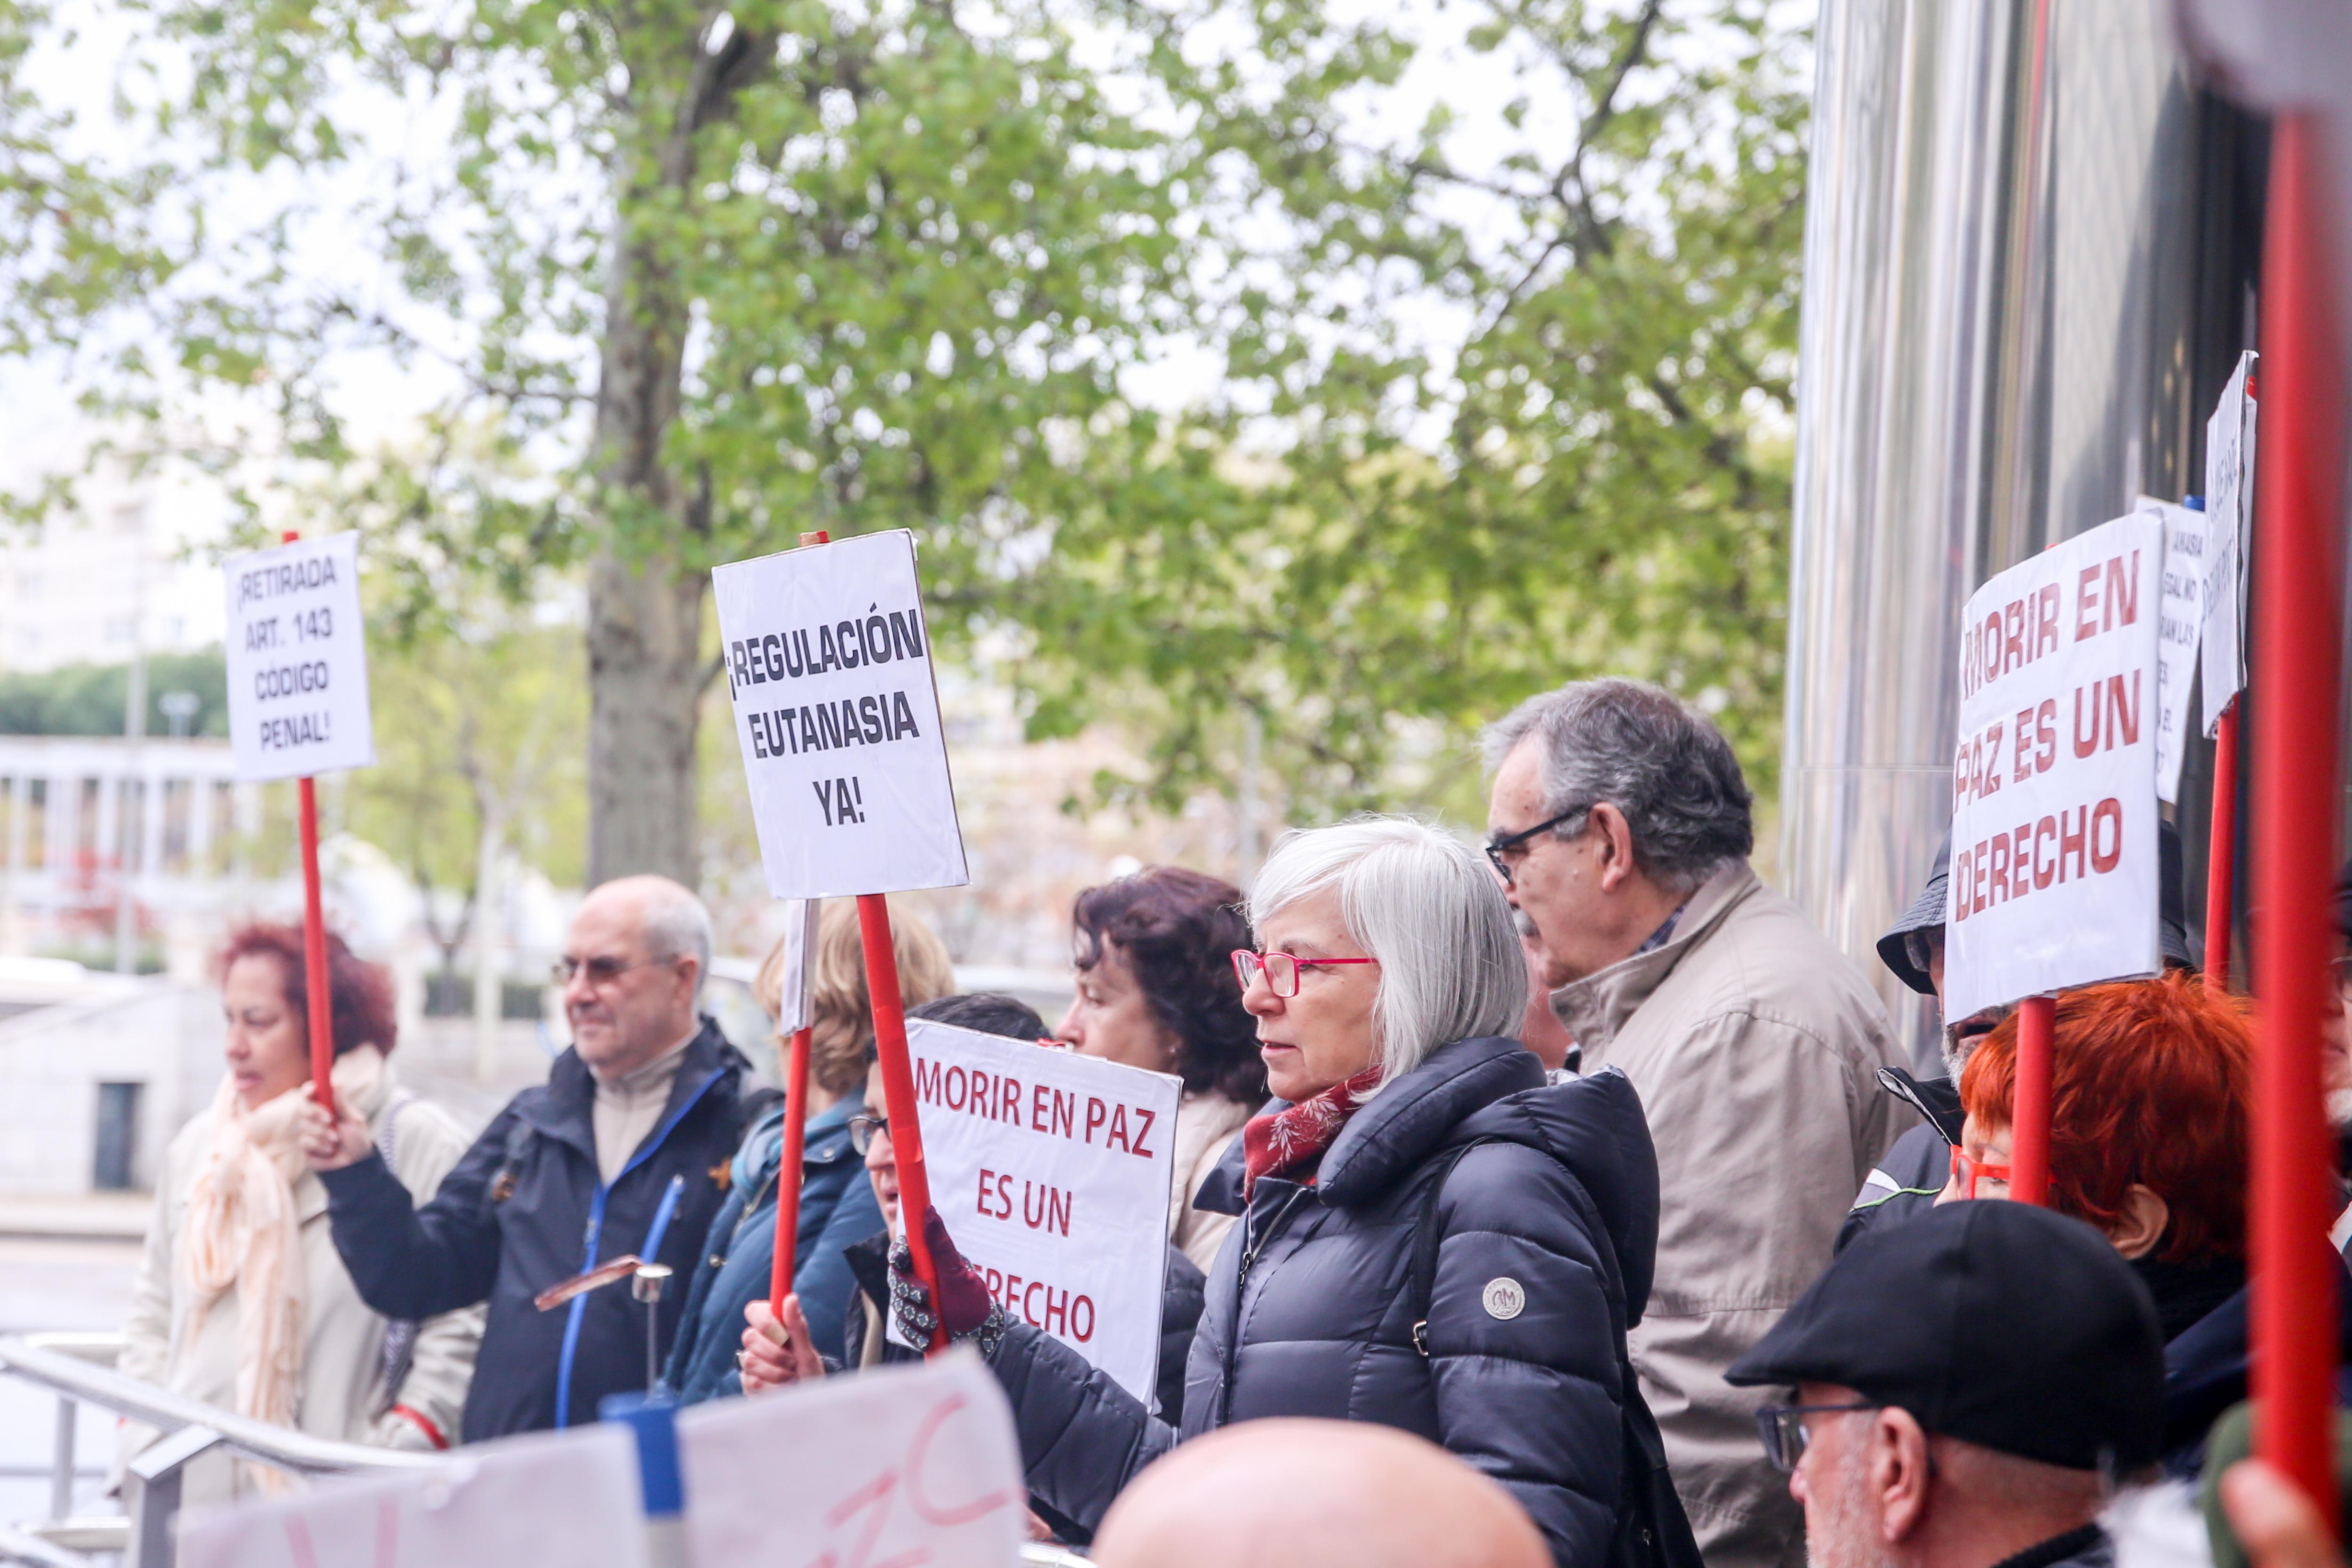 Defensores de la eutanasia participan con pancartas reivindicativas en una manifestación frente a los Juzgados de Plaza de Castilla organizada por la Asociación Derecho a Morir Dignamente en apoyo a Ángel Hernández. EP